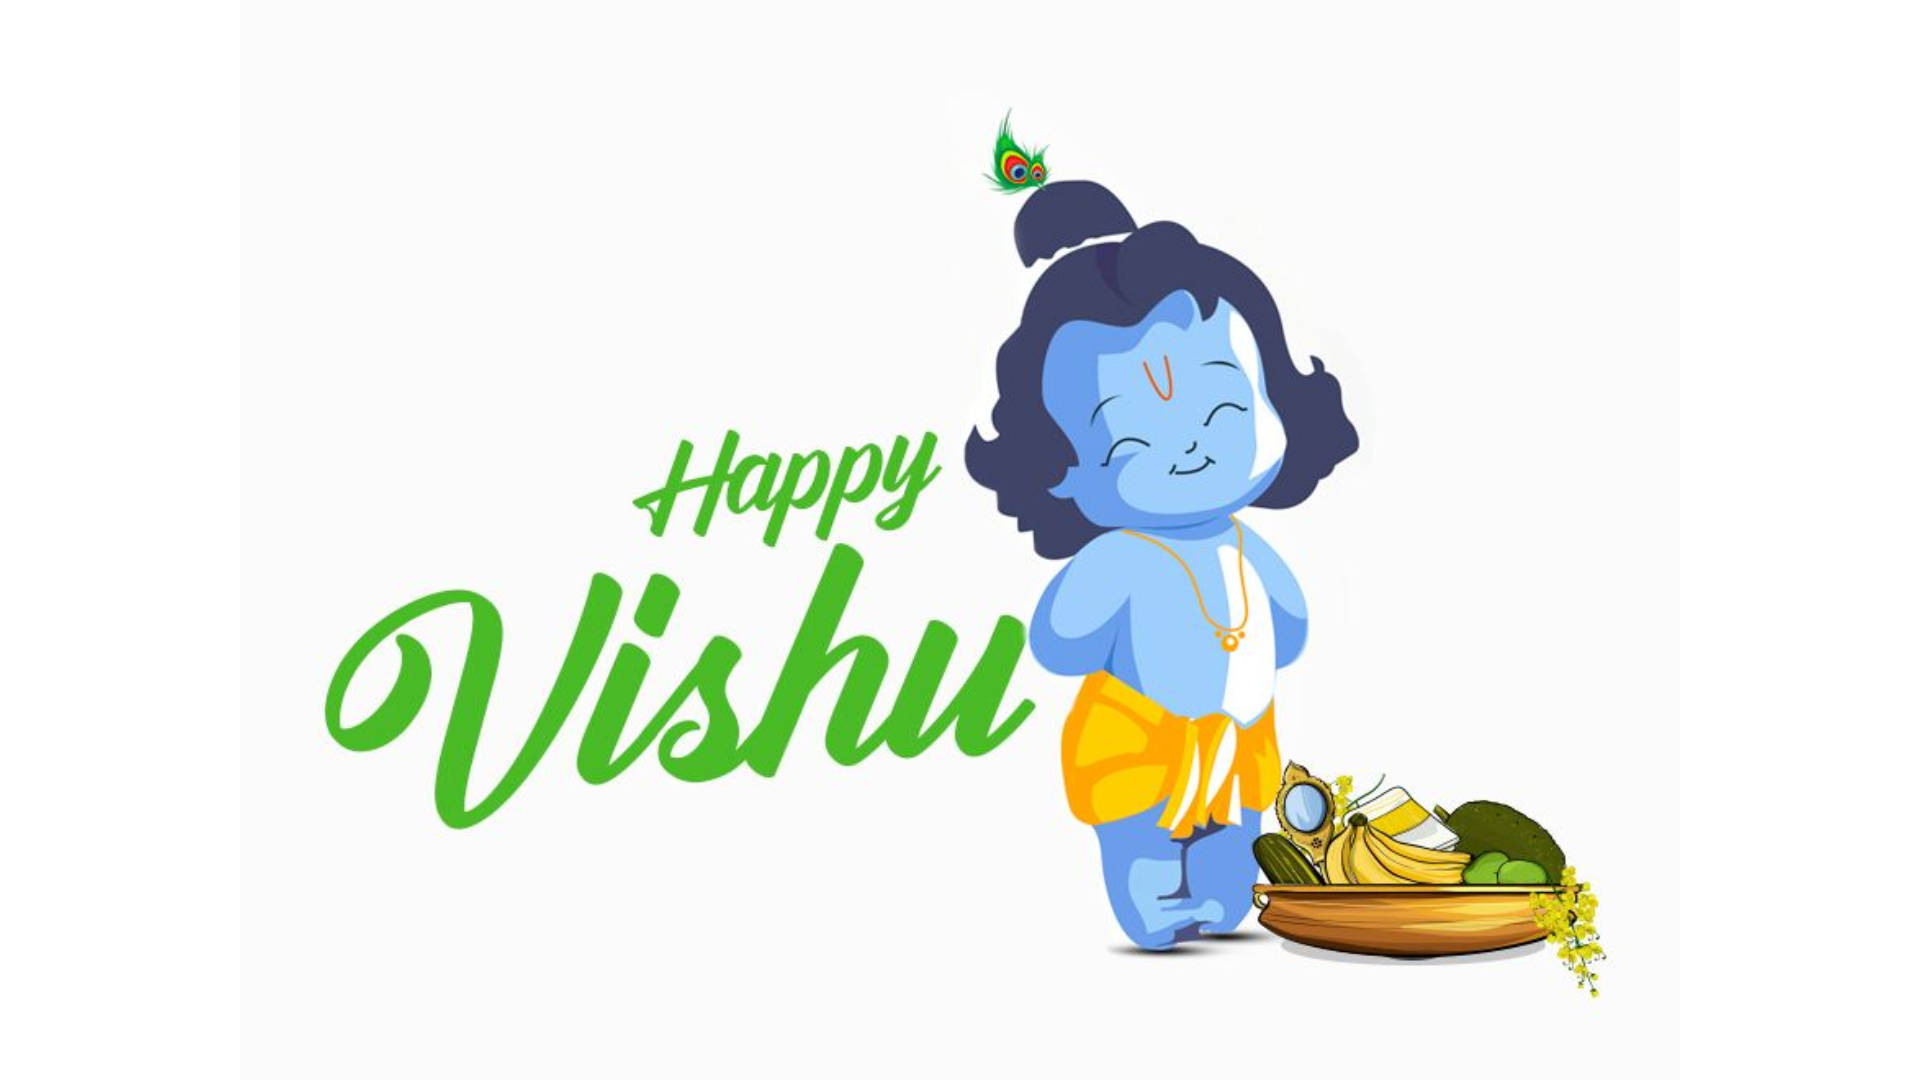 Happy Vishu Greeting Cute Digital Artwork Wallpaper